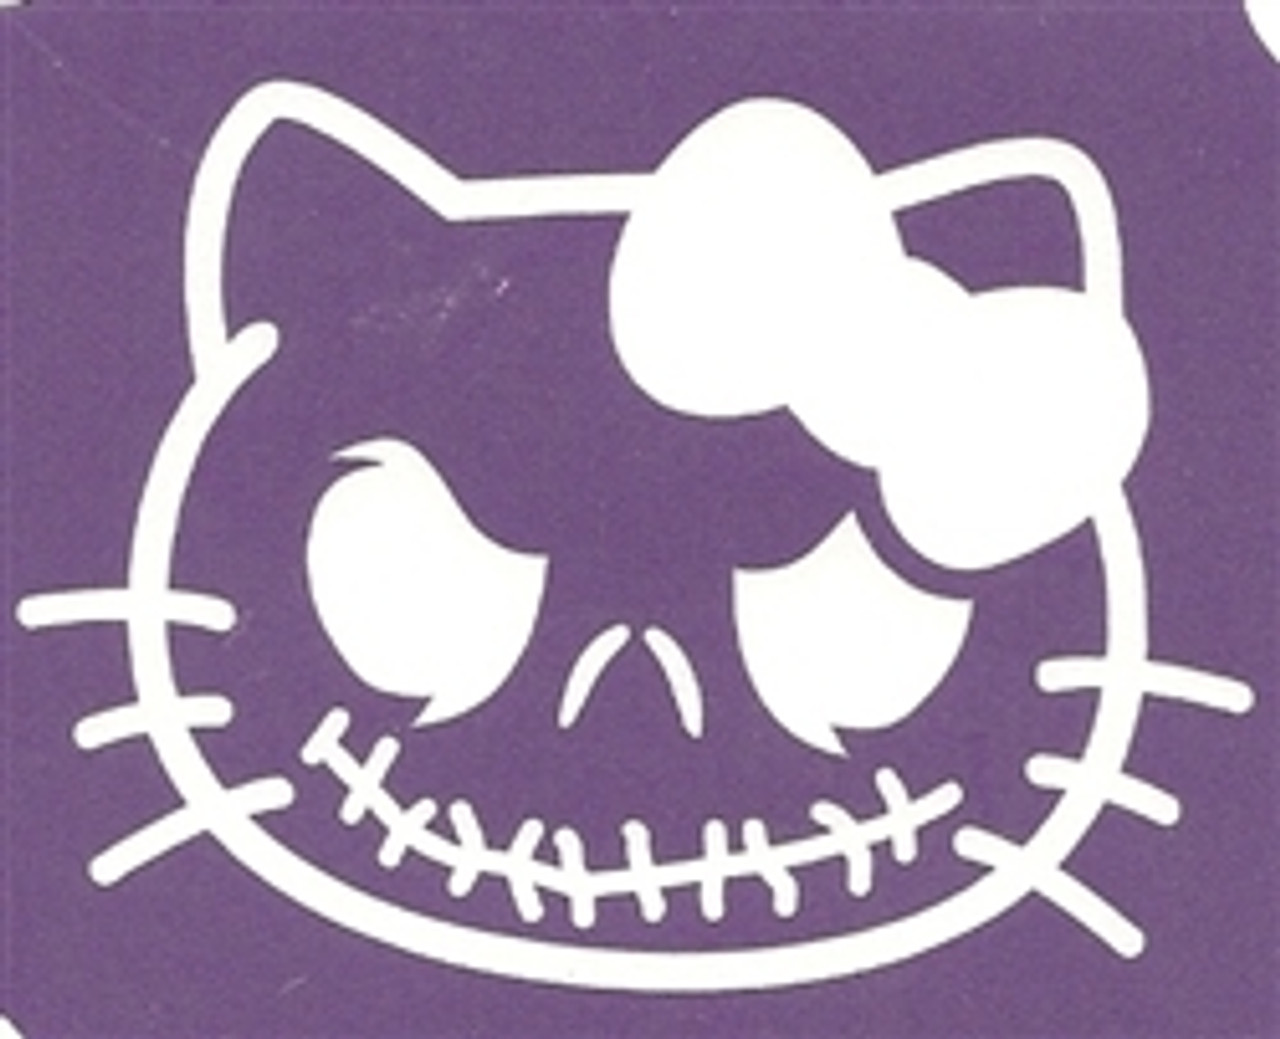 Jack Hello Kitty - 3 Layer Stencil